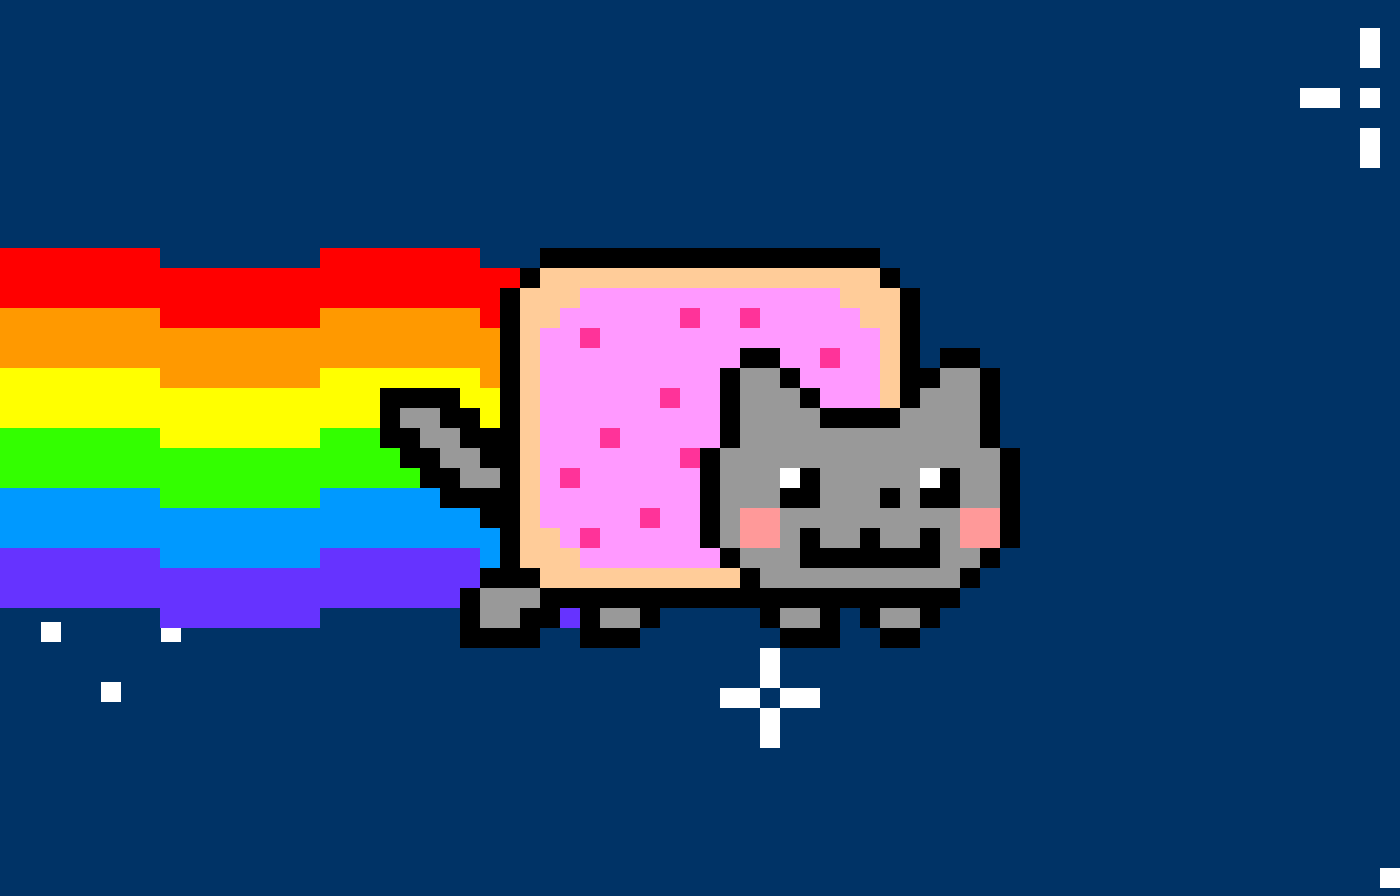 Nyan Cat
-
https://www.nyan.cat/